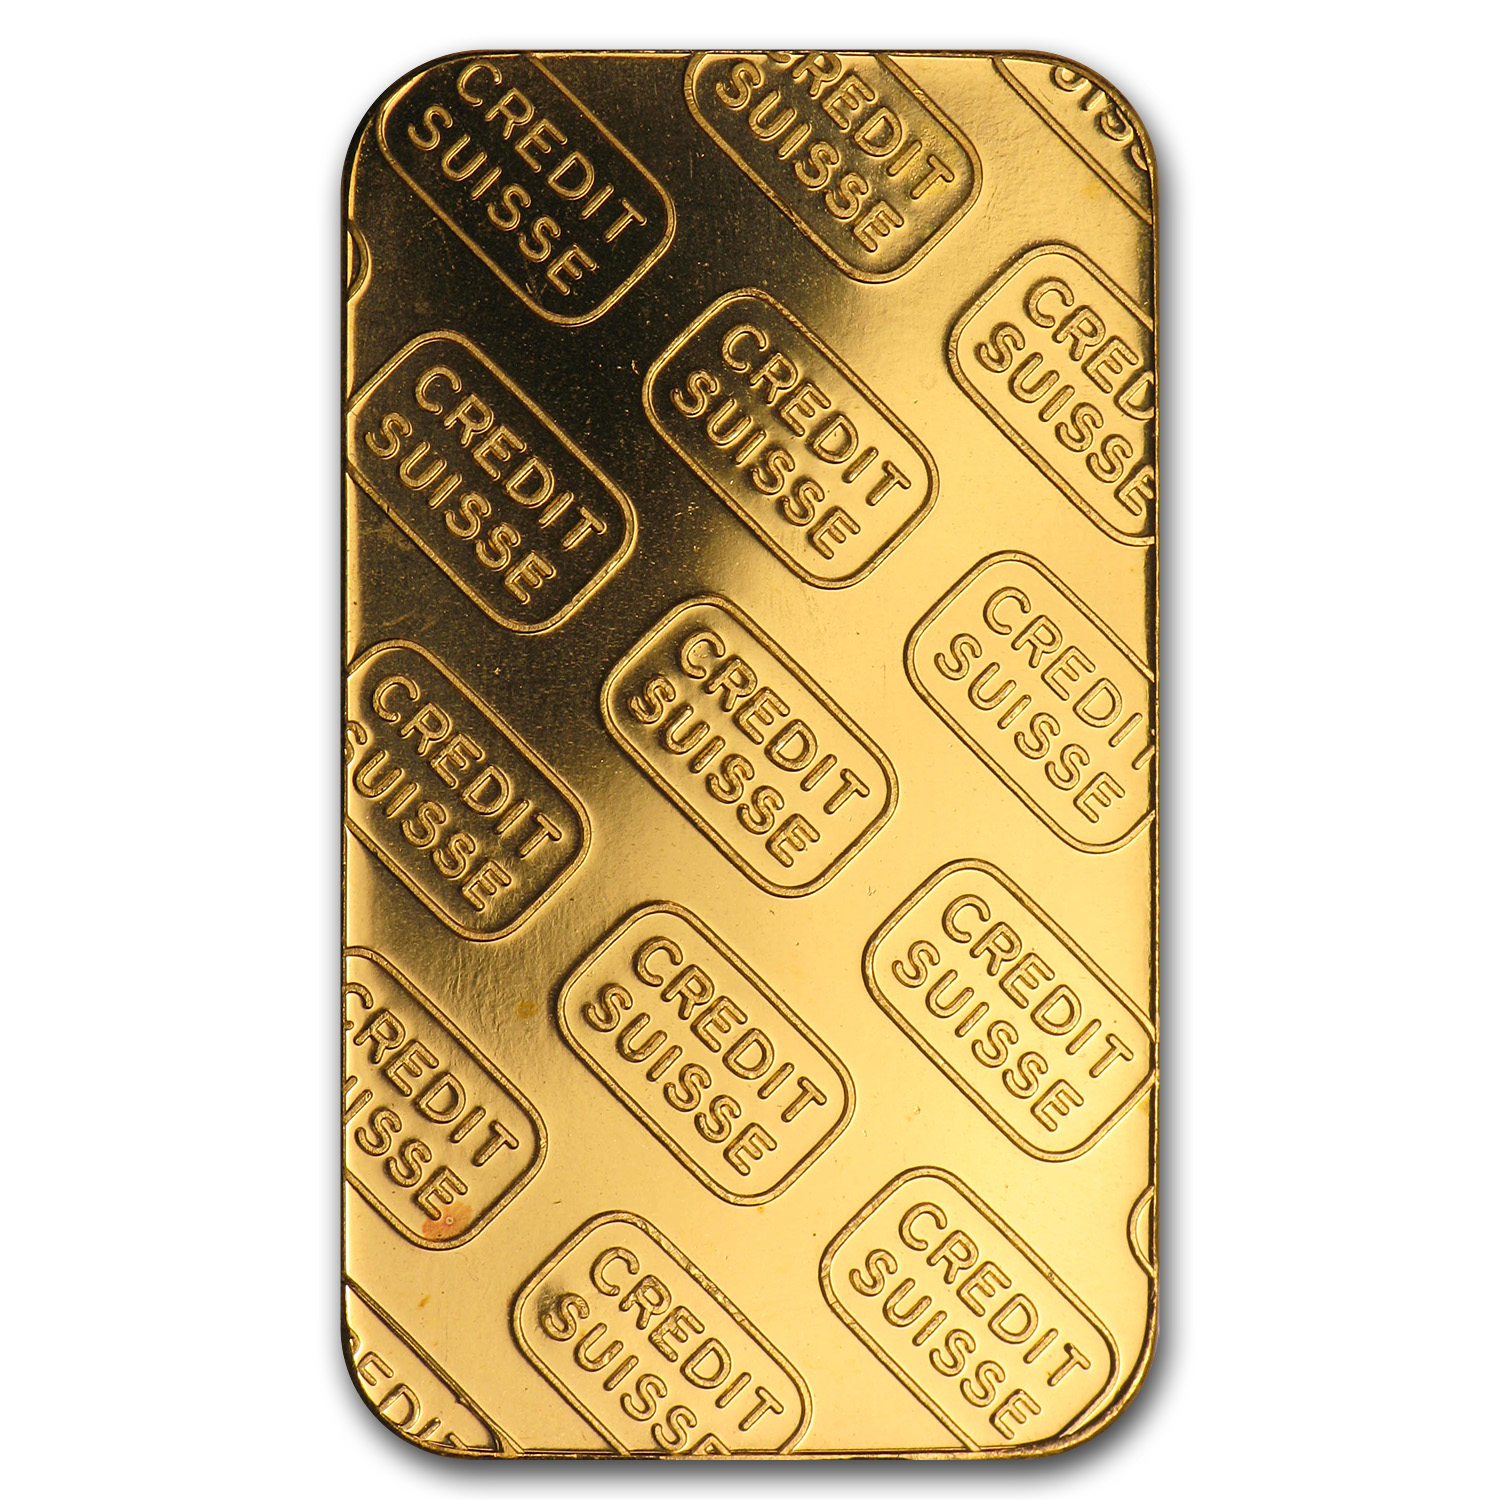 1 oz credit suisse gold bar